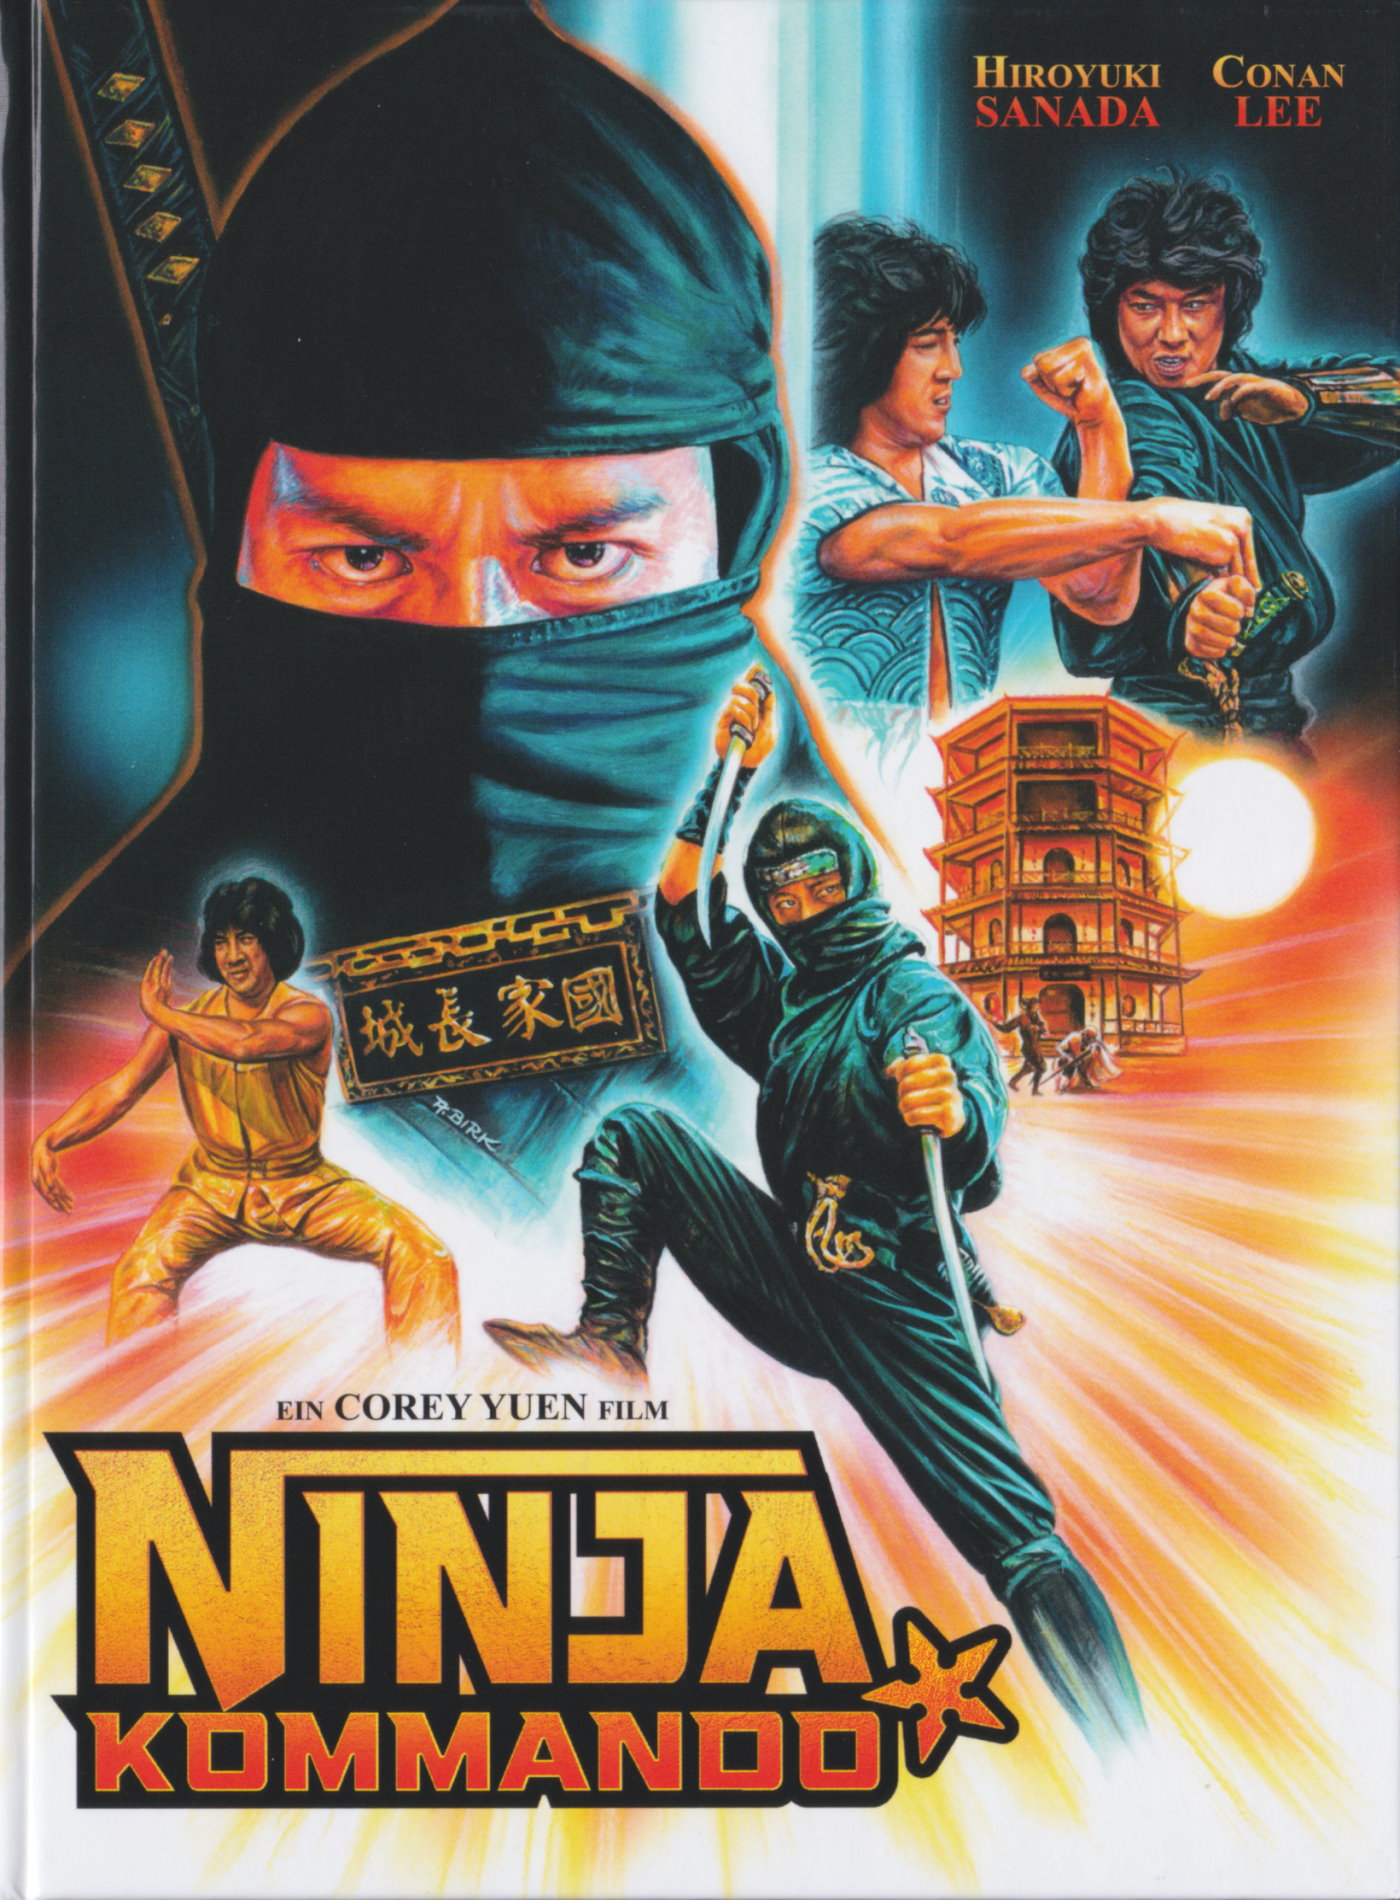 Cover - Ninja Kommando.jpg